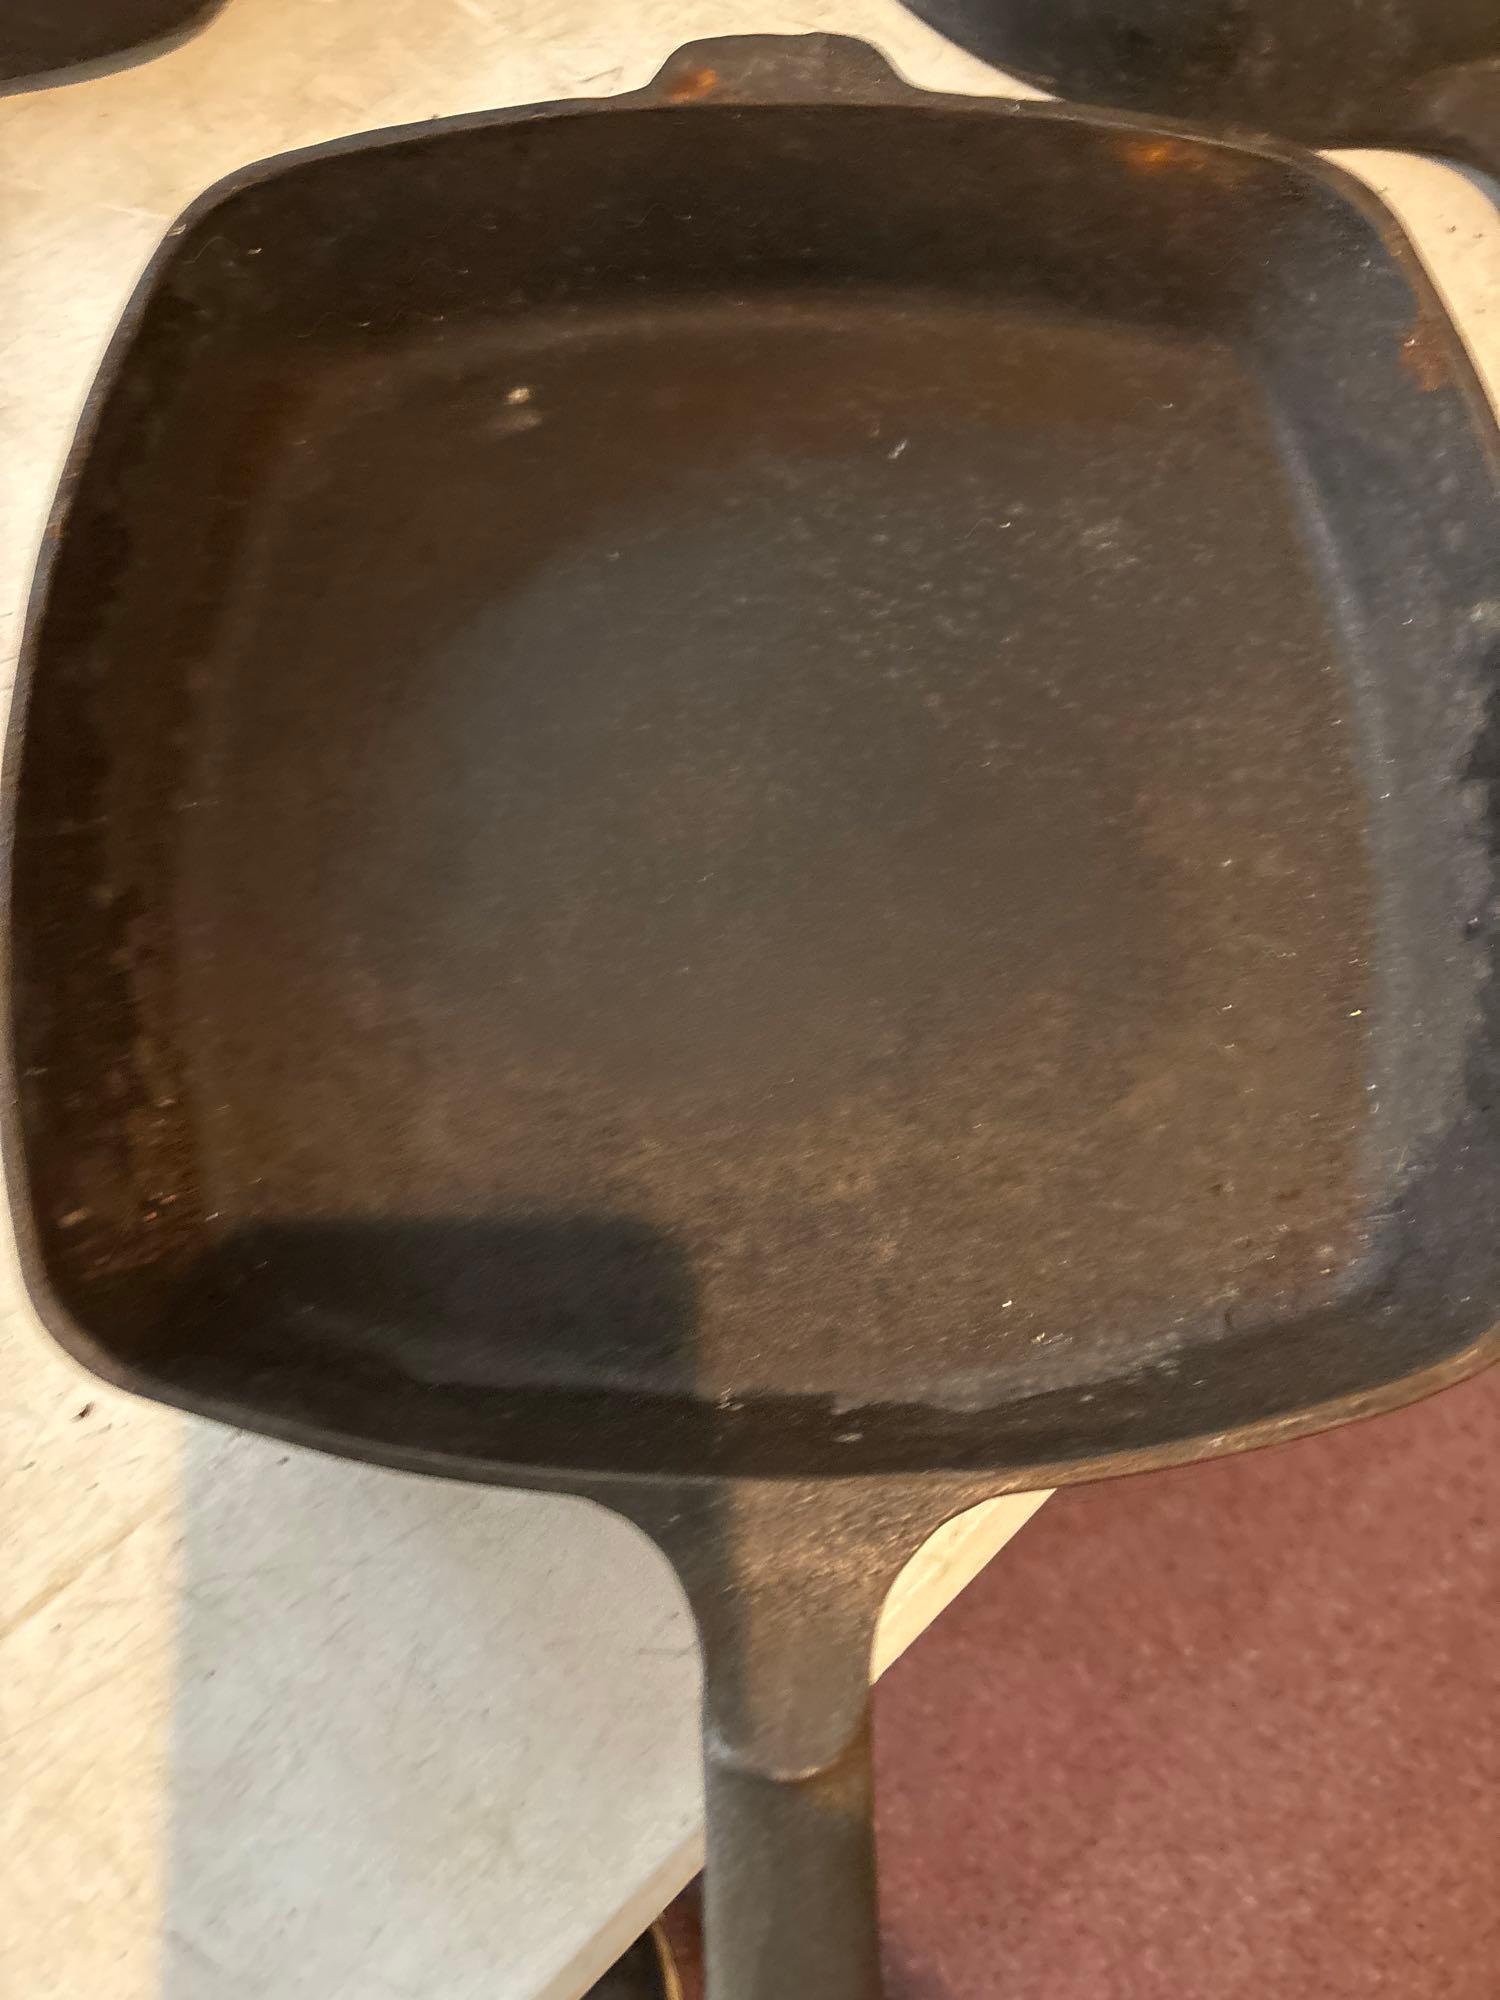 seven cast iron pans